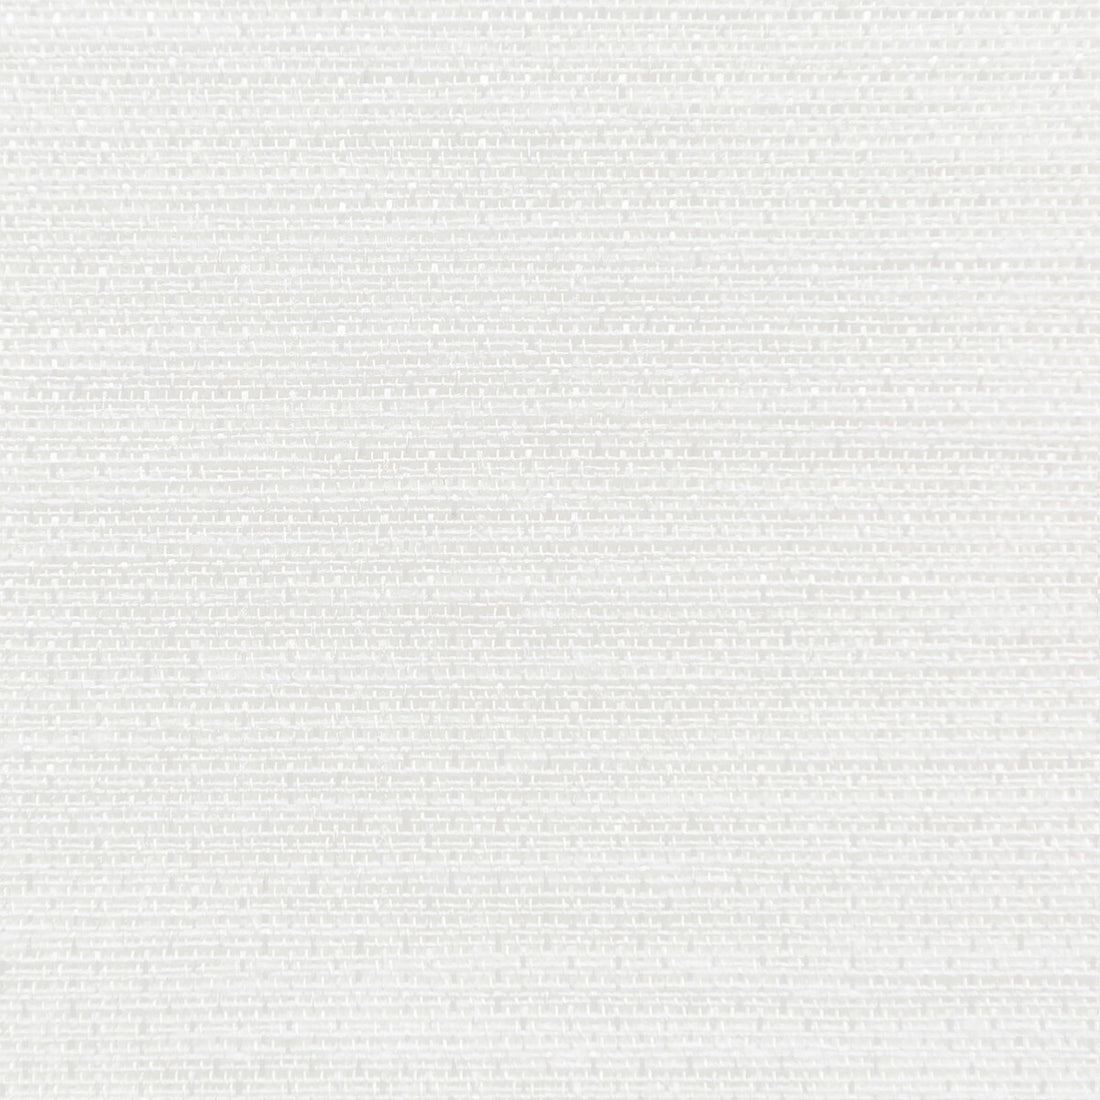 Kravet Basics fabric in 4726-101 color - pattern 4726.101.0 - by Kravet Basics